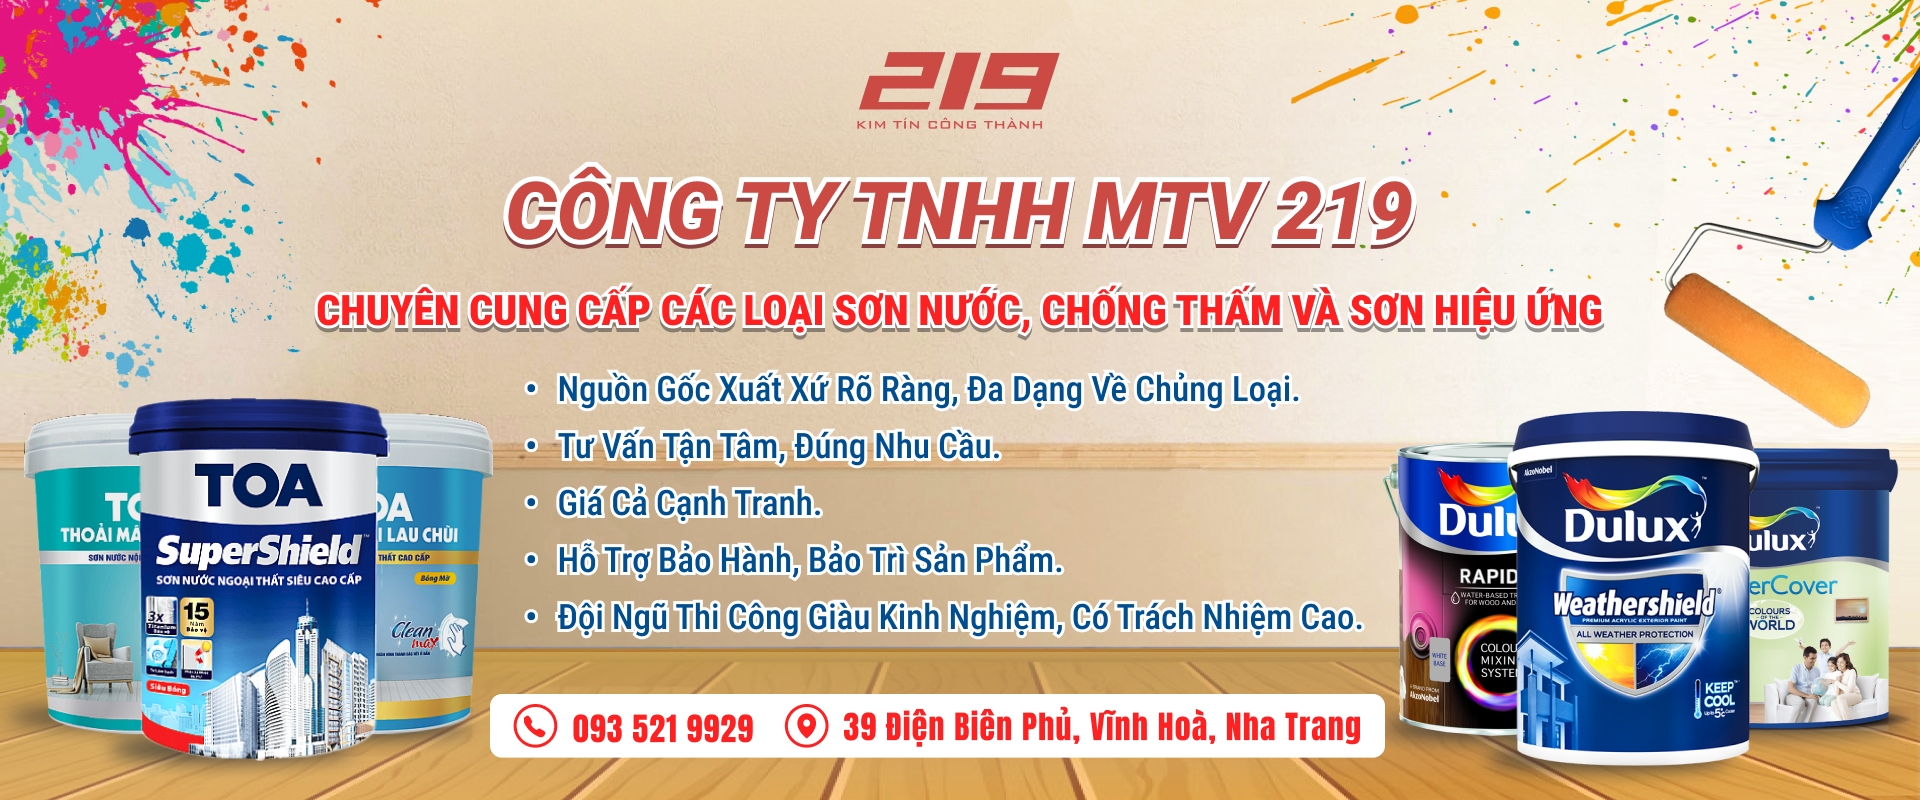 CÔNG TY TNHH MTV 219